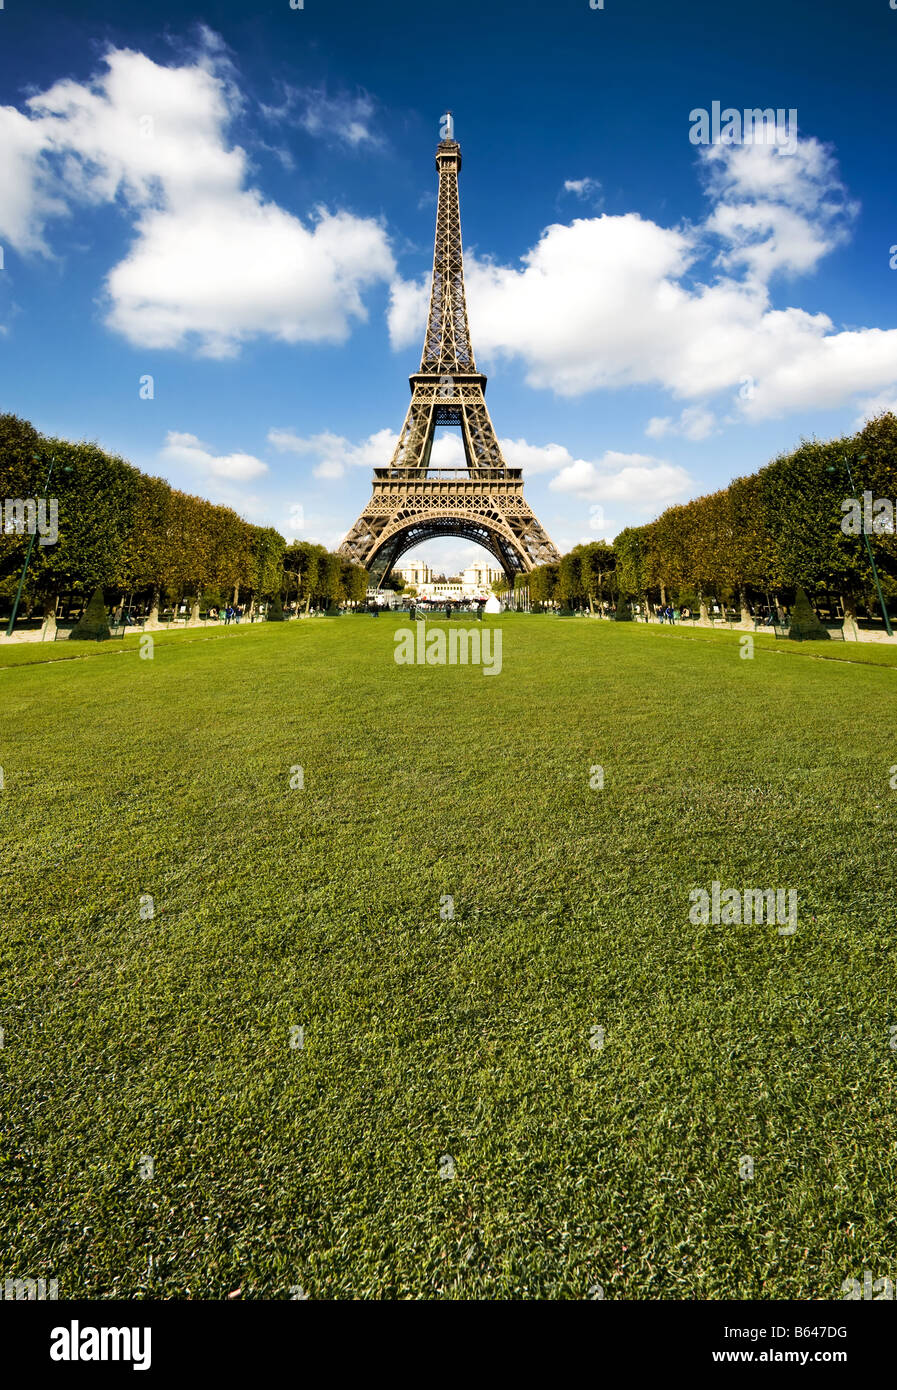 Schönes Foto von der Eiffelturm in Paris mit wunderschönen Farben und Weitwinkel Zentralperspektive grass viele Textfreiraum Stockfoto